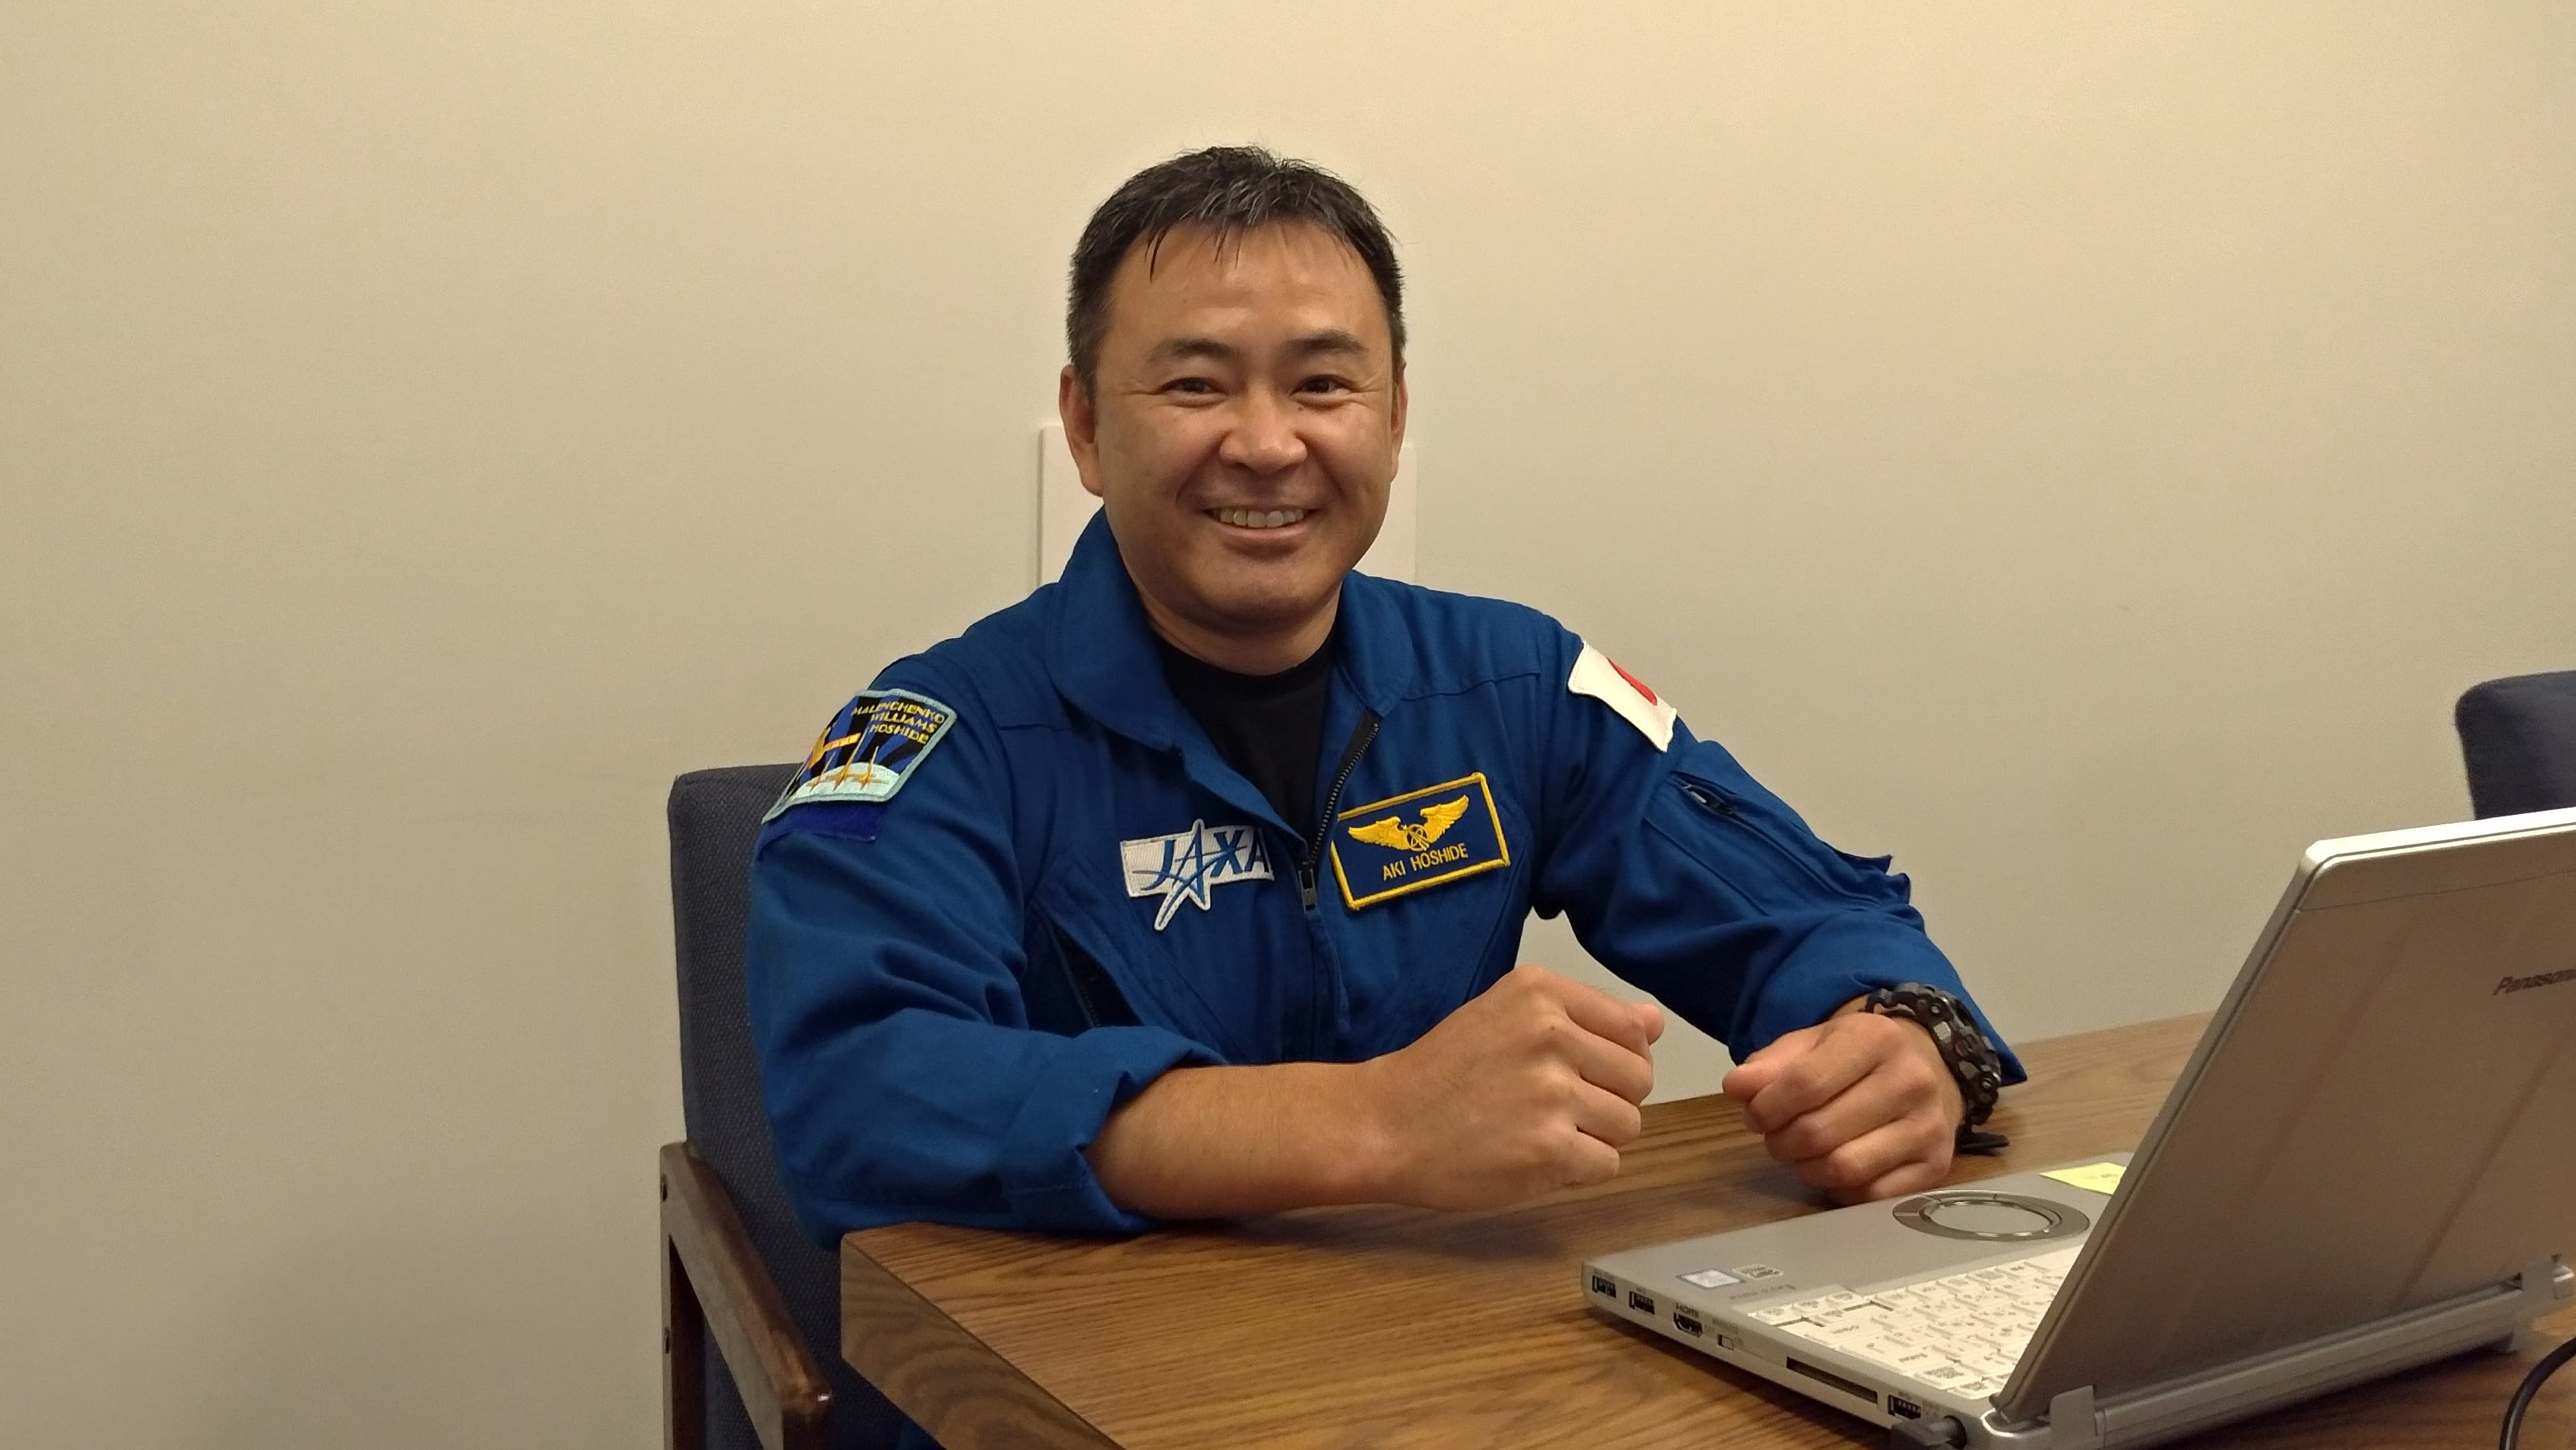 星出彰彦宇宙飛行士が3回目のミッションへ 　ー中高生へメッセージー